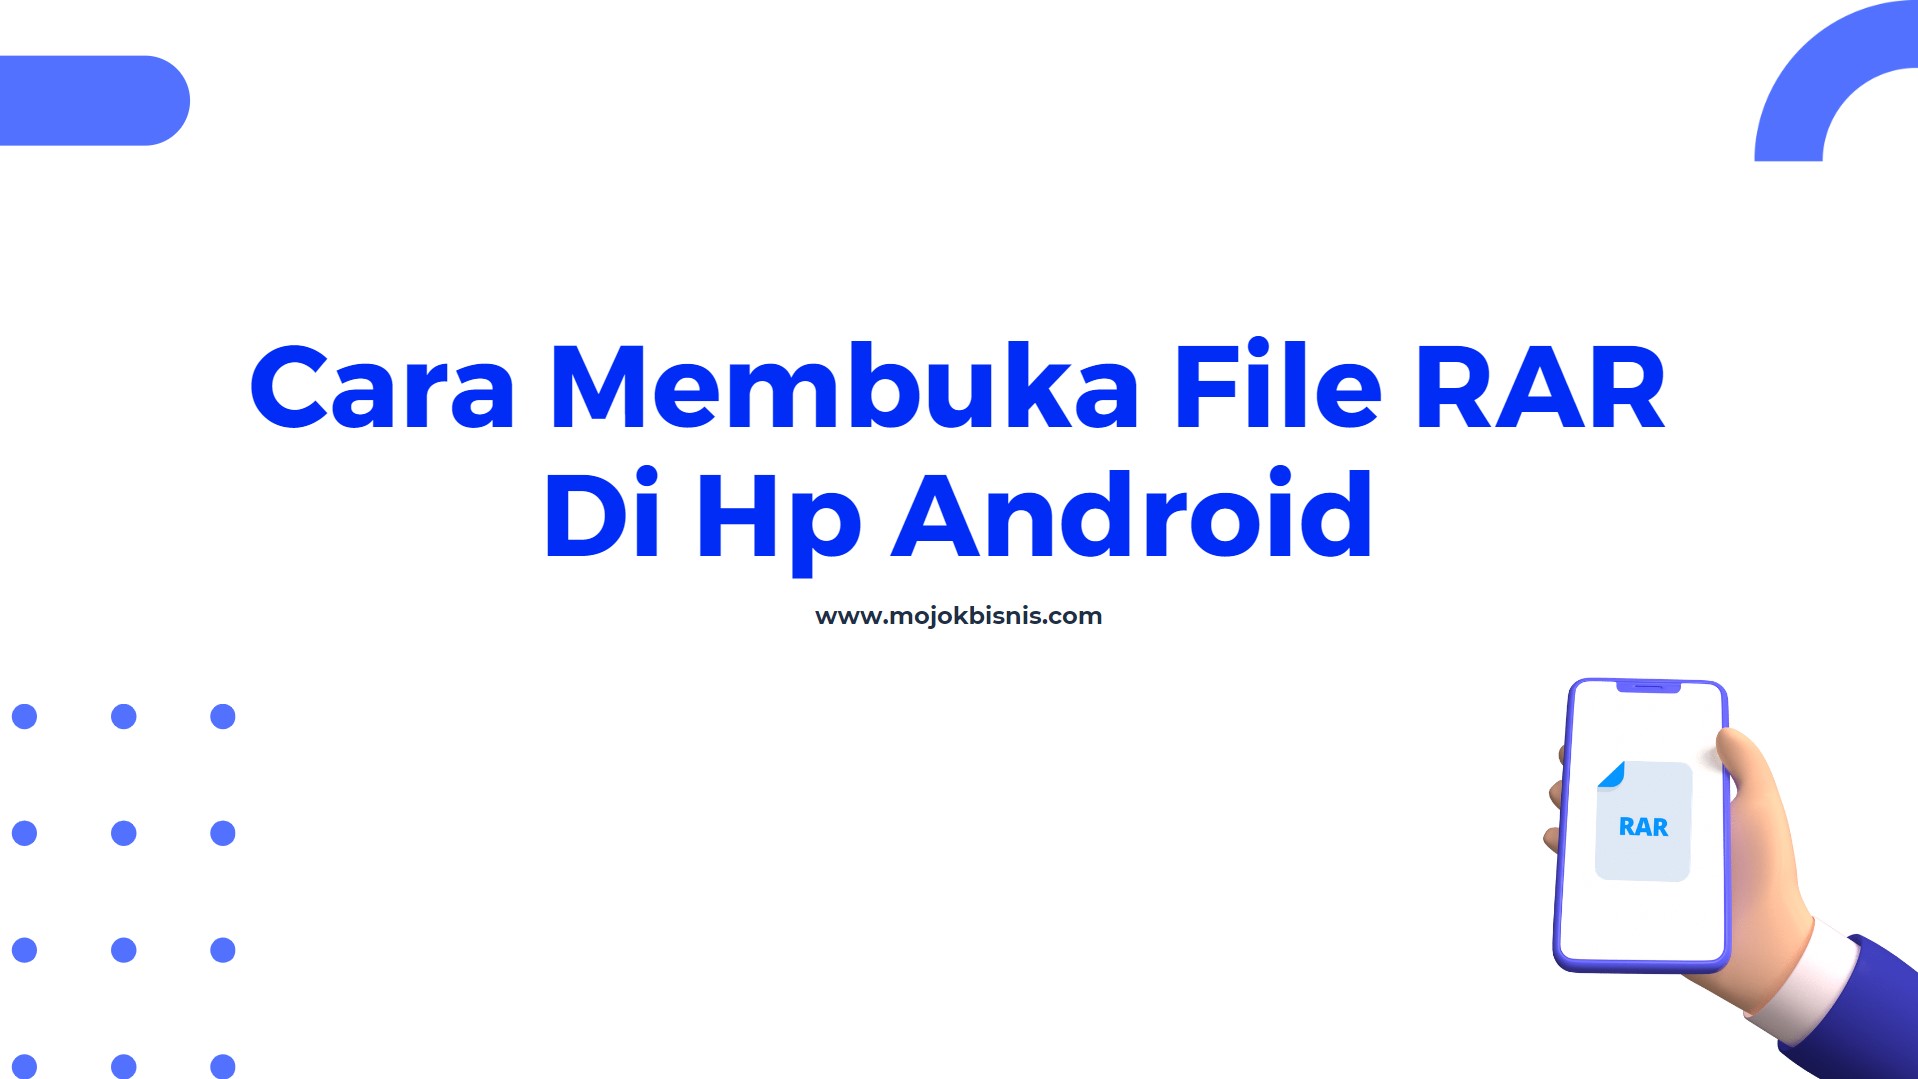 Cara Membuka File RAR Di Hp Android